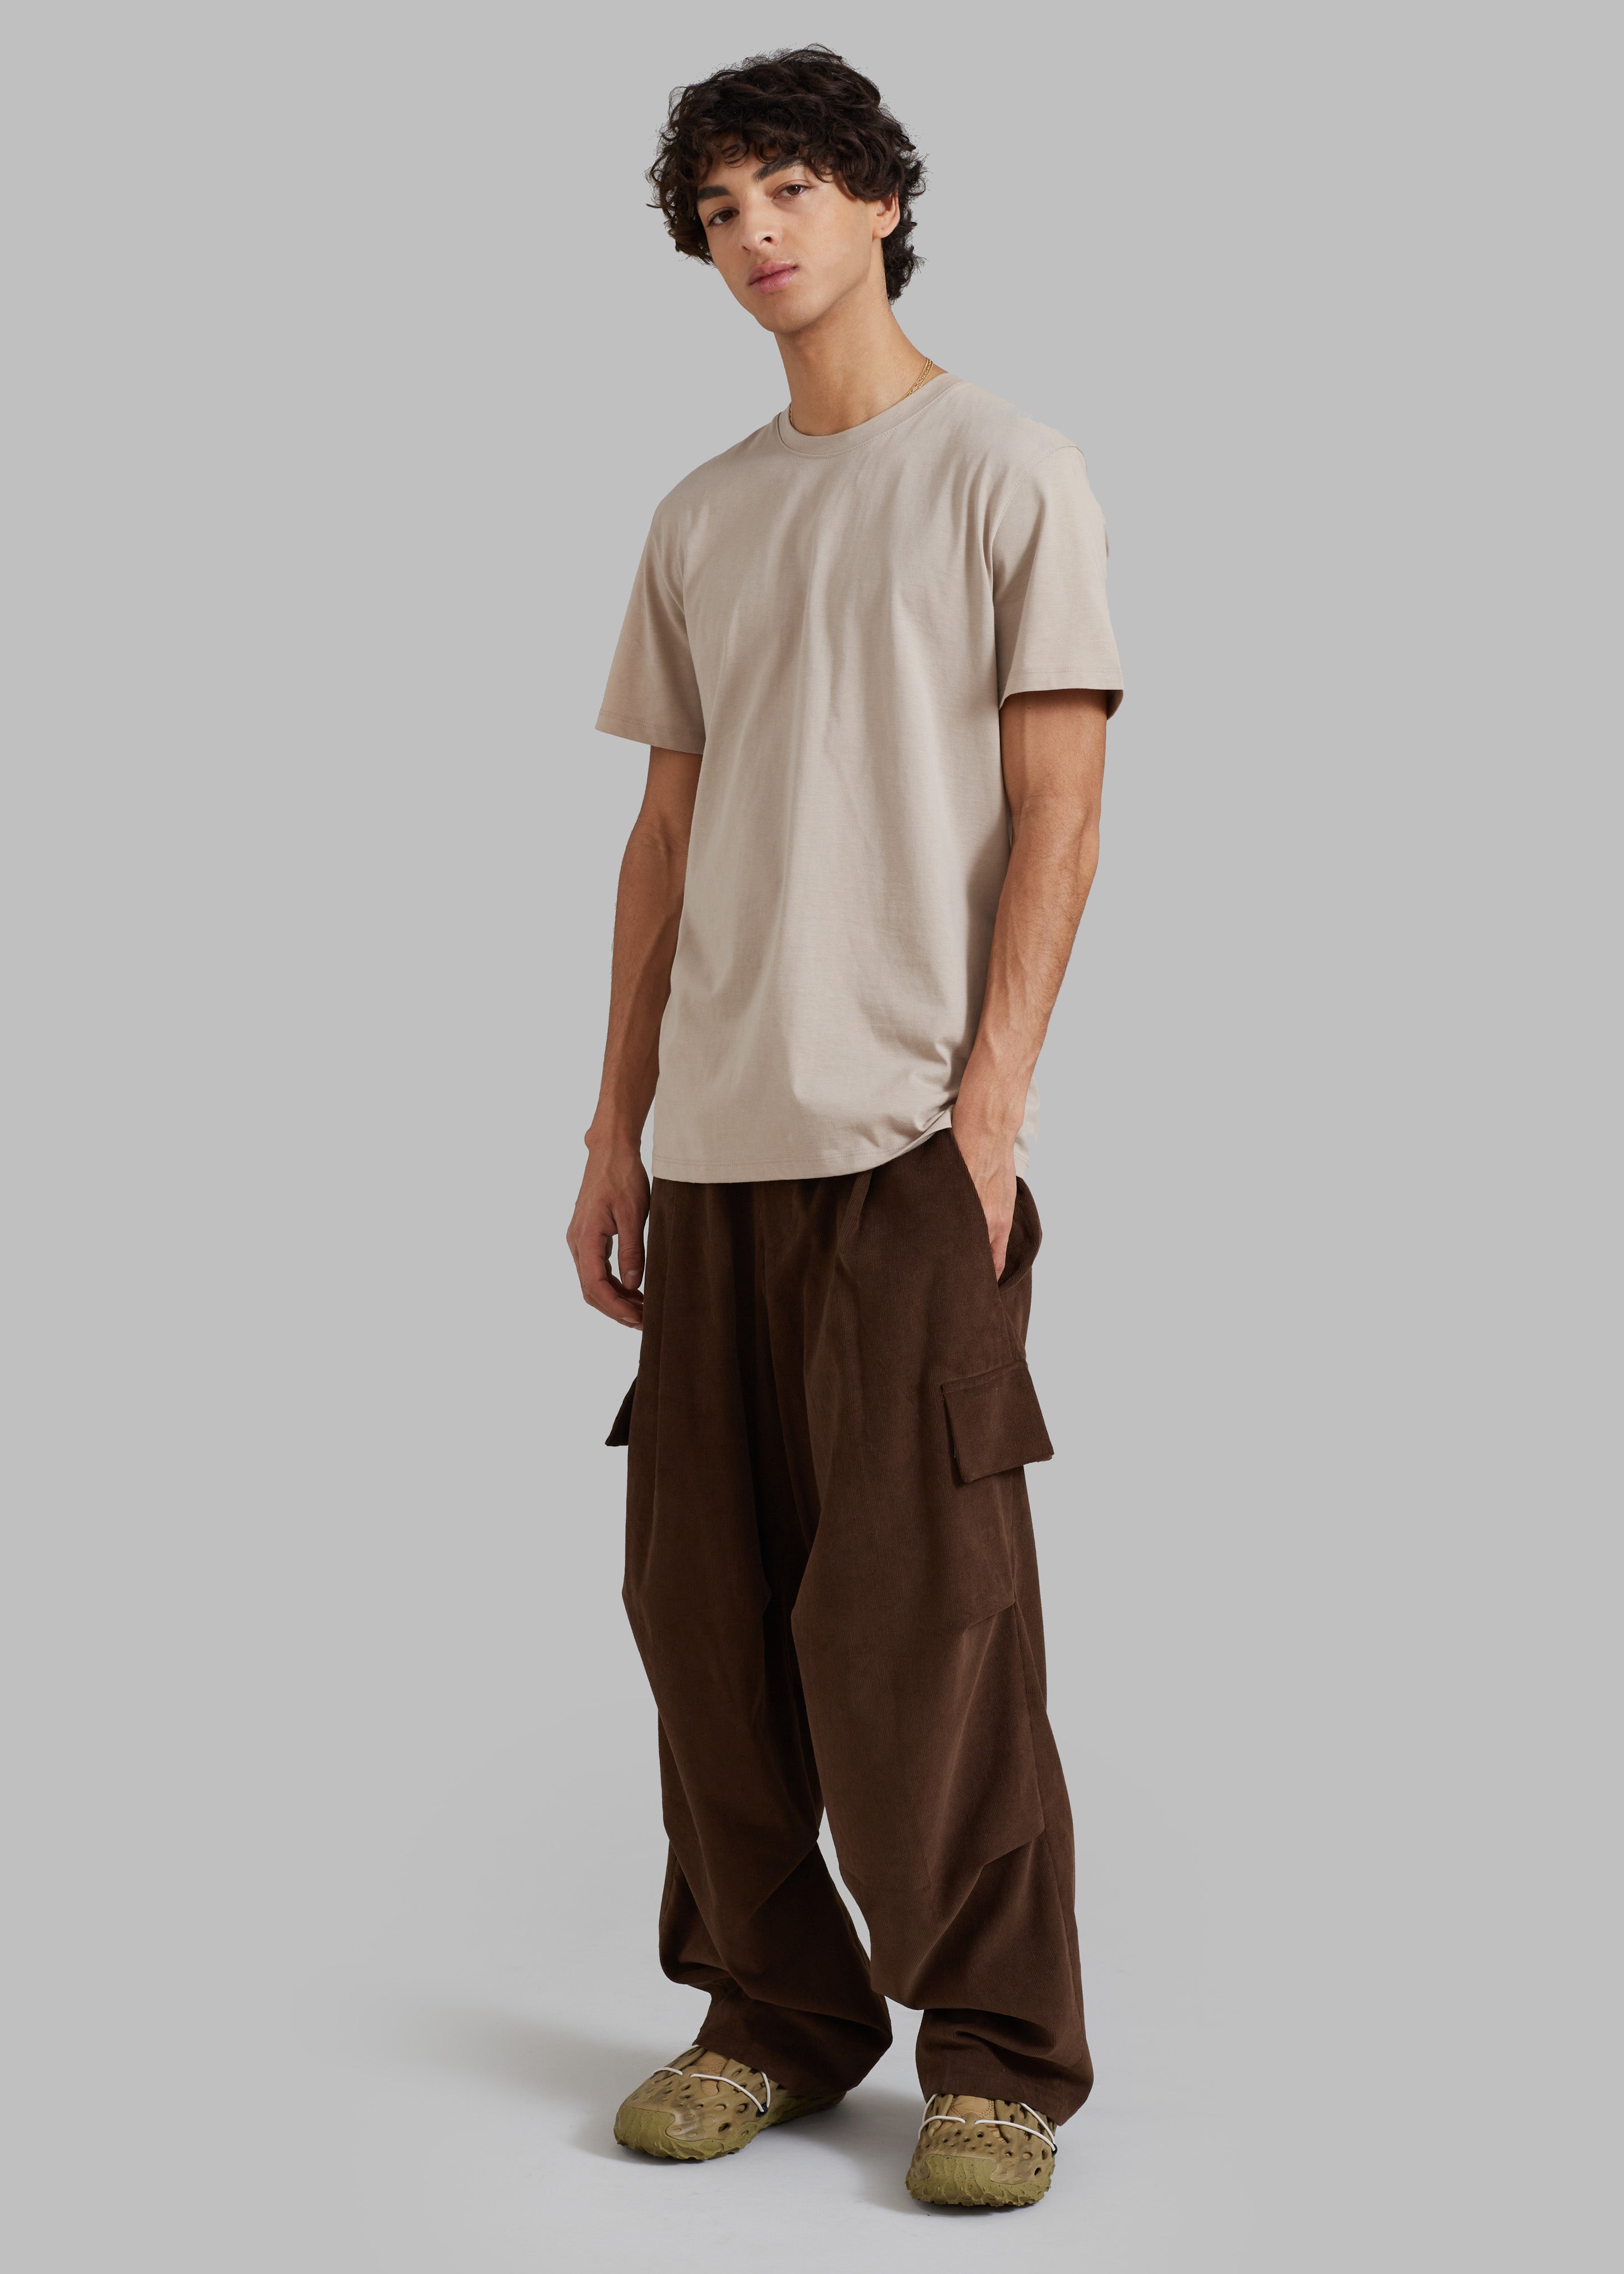 Garnett Corduroy Pants - Brown - 11 - Garnett Corduroy Pants - Brown [gender-male]